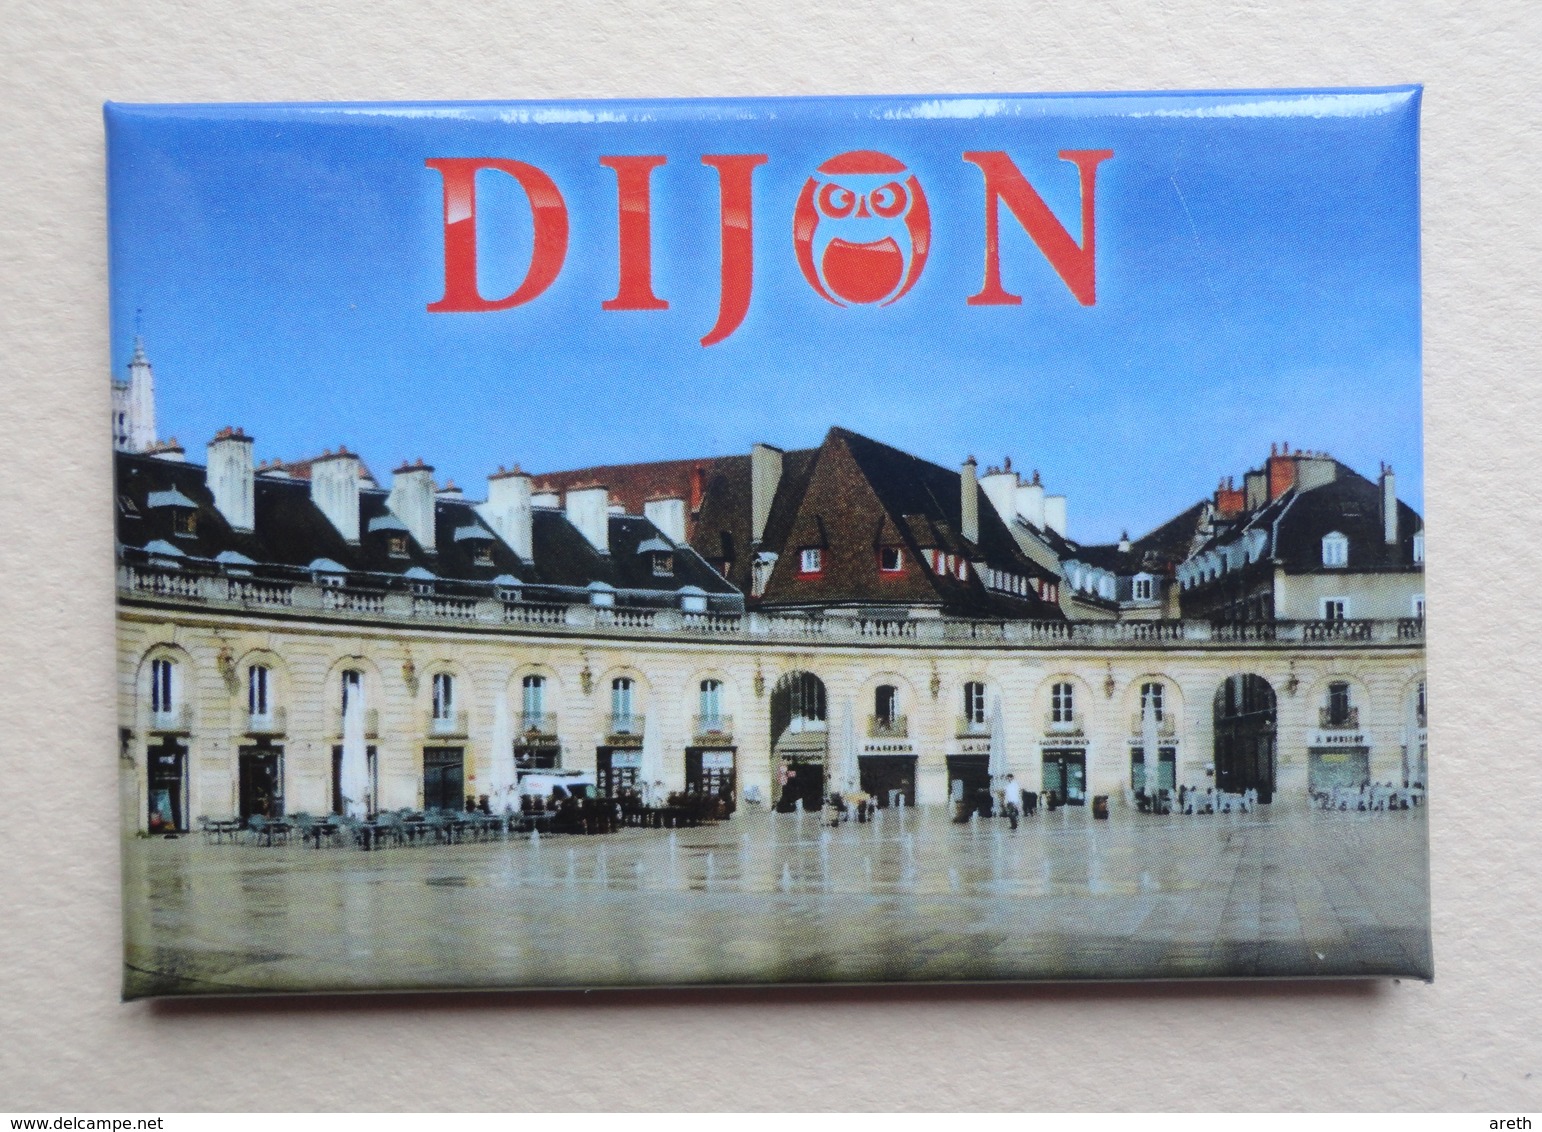 2 Magnets DIJON - Chouette,Le Bareuzai, Palais Des Ducs.. - Tourisme